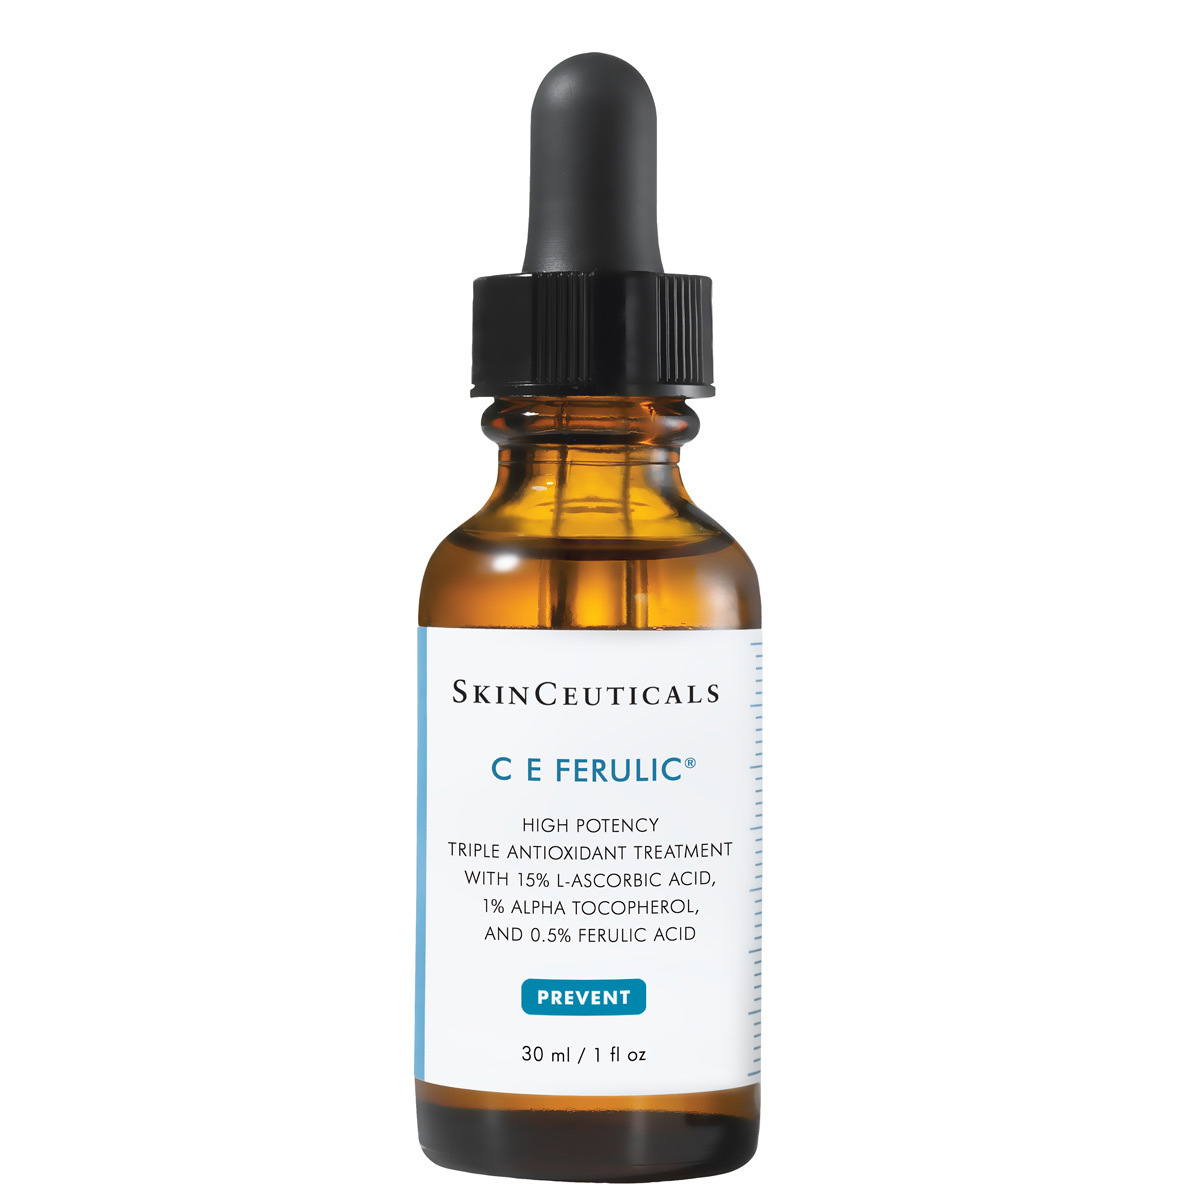 CE Ferulic de SkinCeuticals , con un 15% de vitamina C (ácido L-Ascórbico) y 1% de ácido Ferúlico (149 euros).